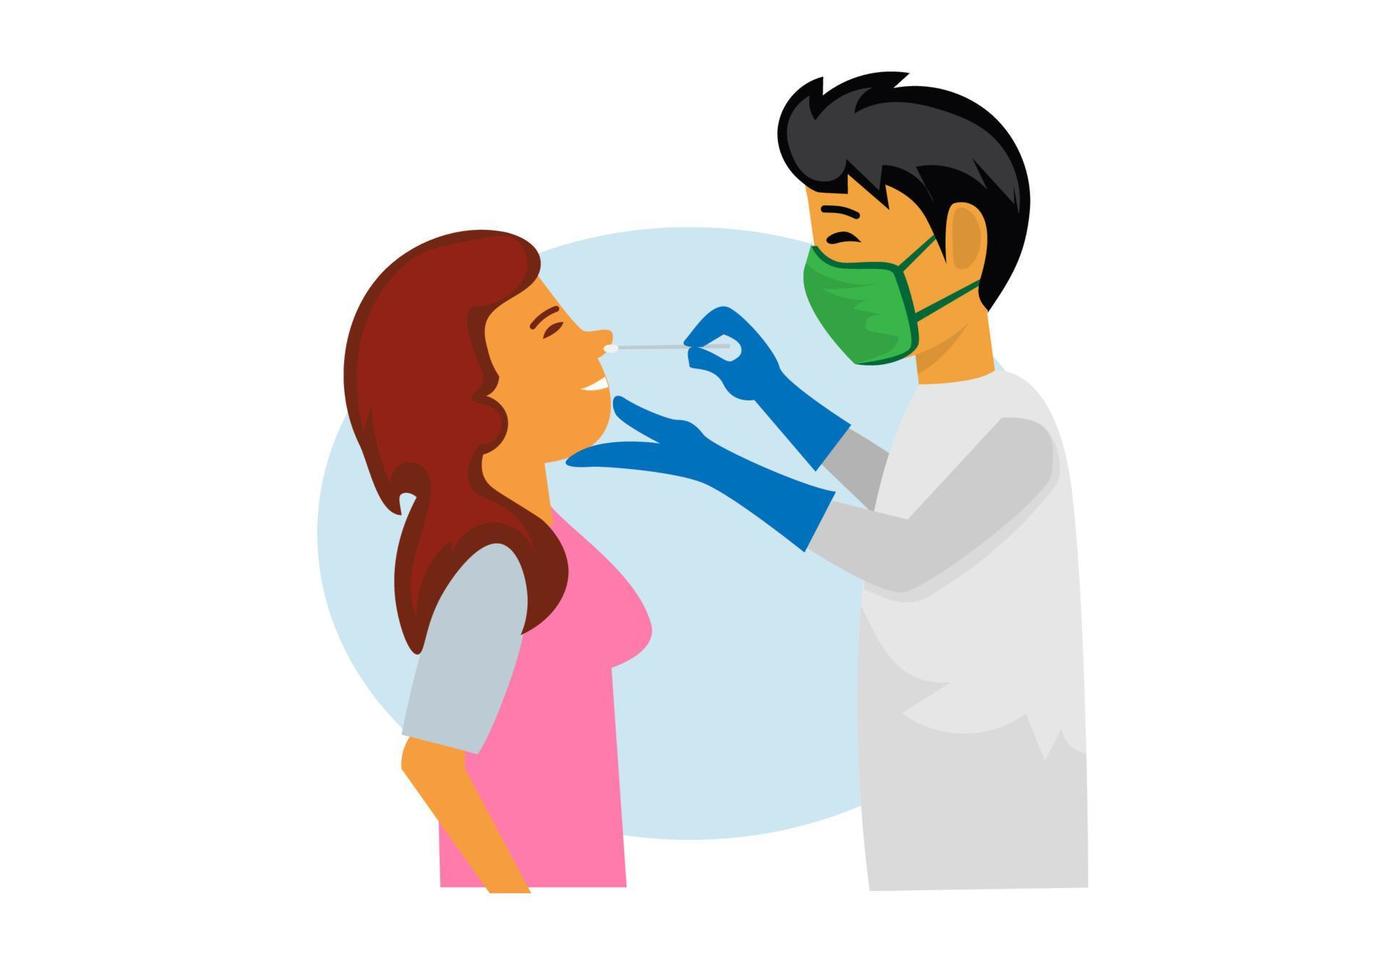 o médico do paciente examina o vírus corona usando um cotonete e leva a infecção para um teste. ilustração vetorial vetor